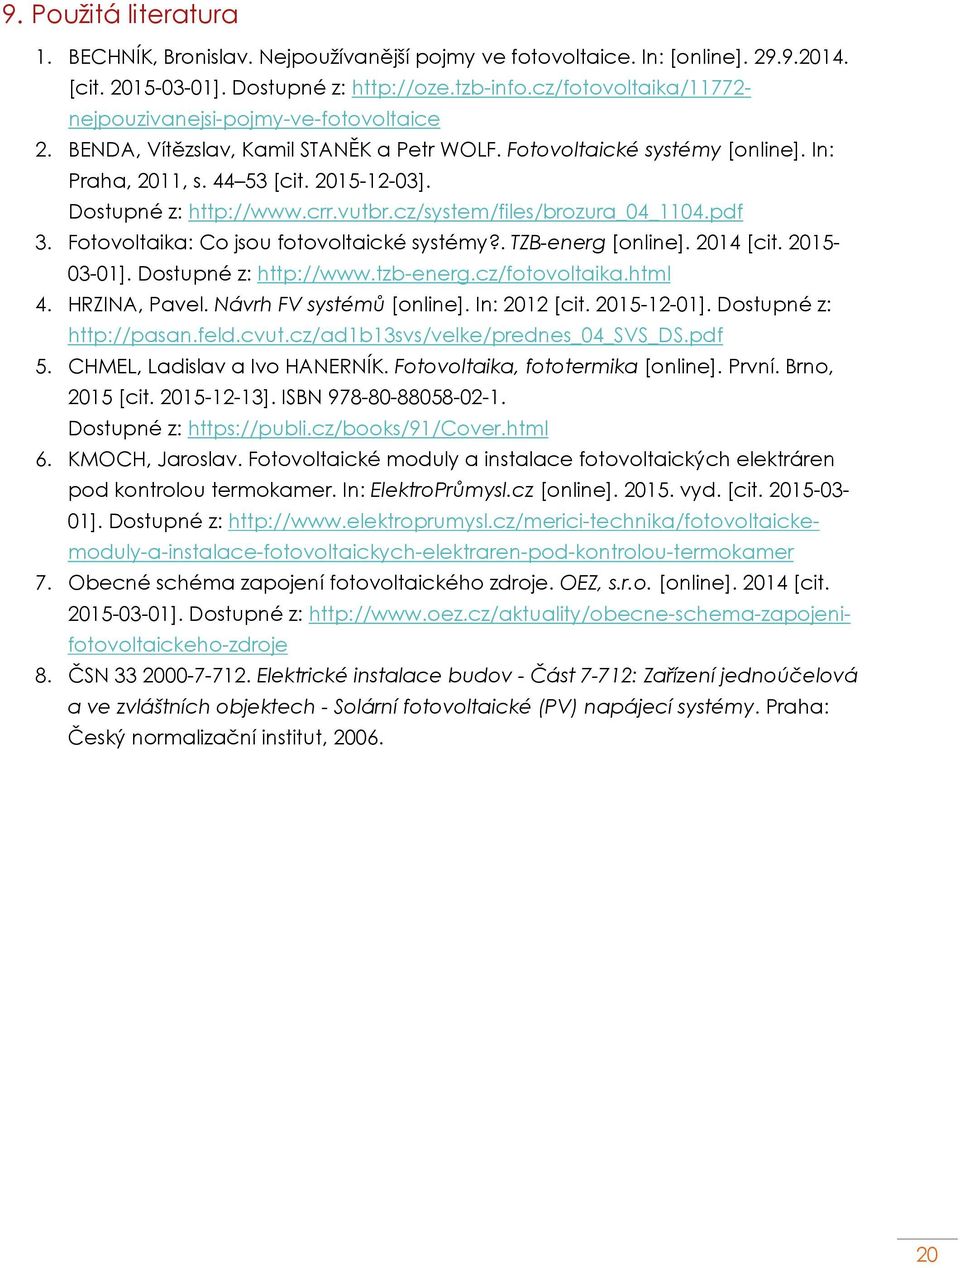 Dostupné z: http://www.crr.vutbr.cz/system/files/brozura_04_1104.pdf 3. Fotovoltaika: Co jsou fotovoltaické systémy?. TZB-energ [online]. 2014 [cit. 2015-03-01]. Dostupné z: http://www.tzb-energ.